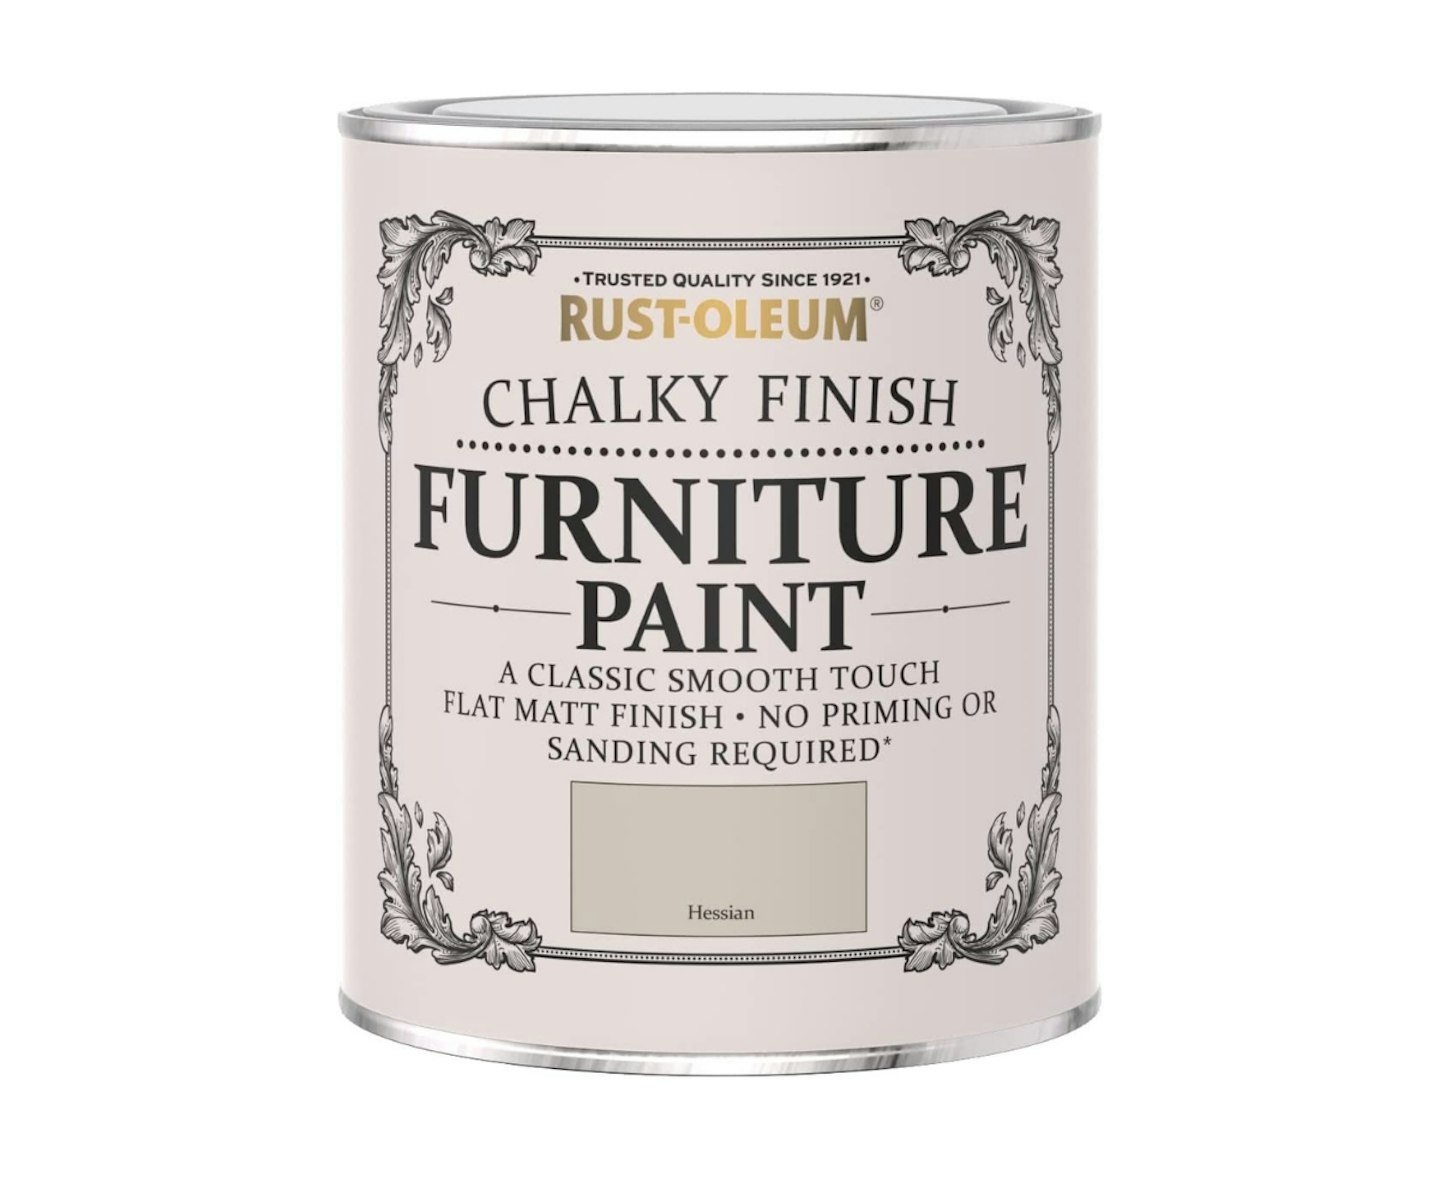 Rust-Oleum 750ml Rustoleum Chalky Finish Furniture Paint Flat Matt Hessian, RO0070026G1